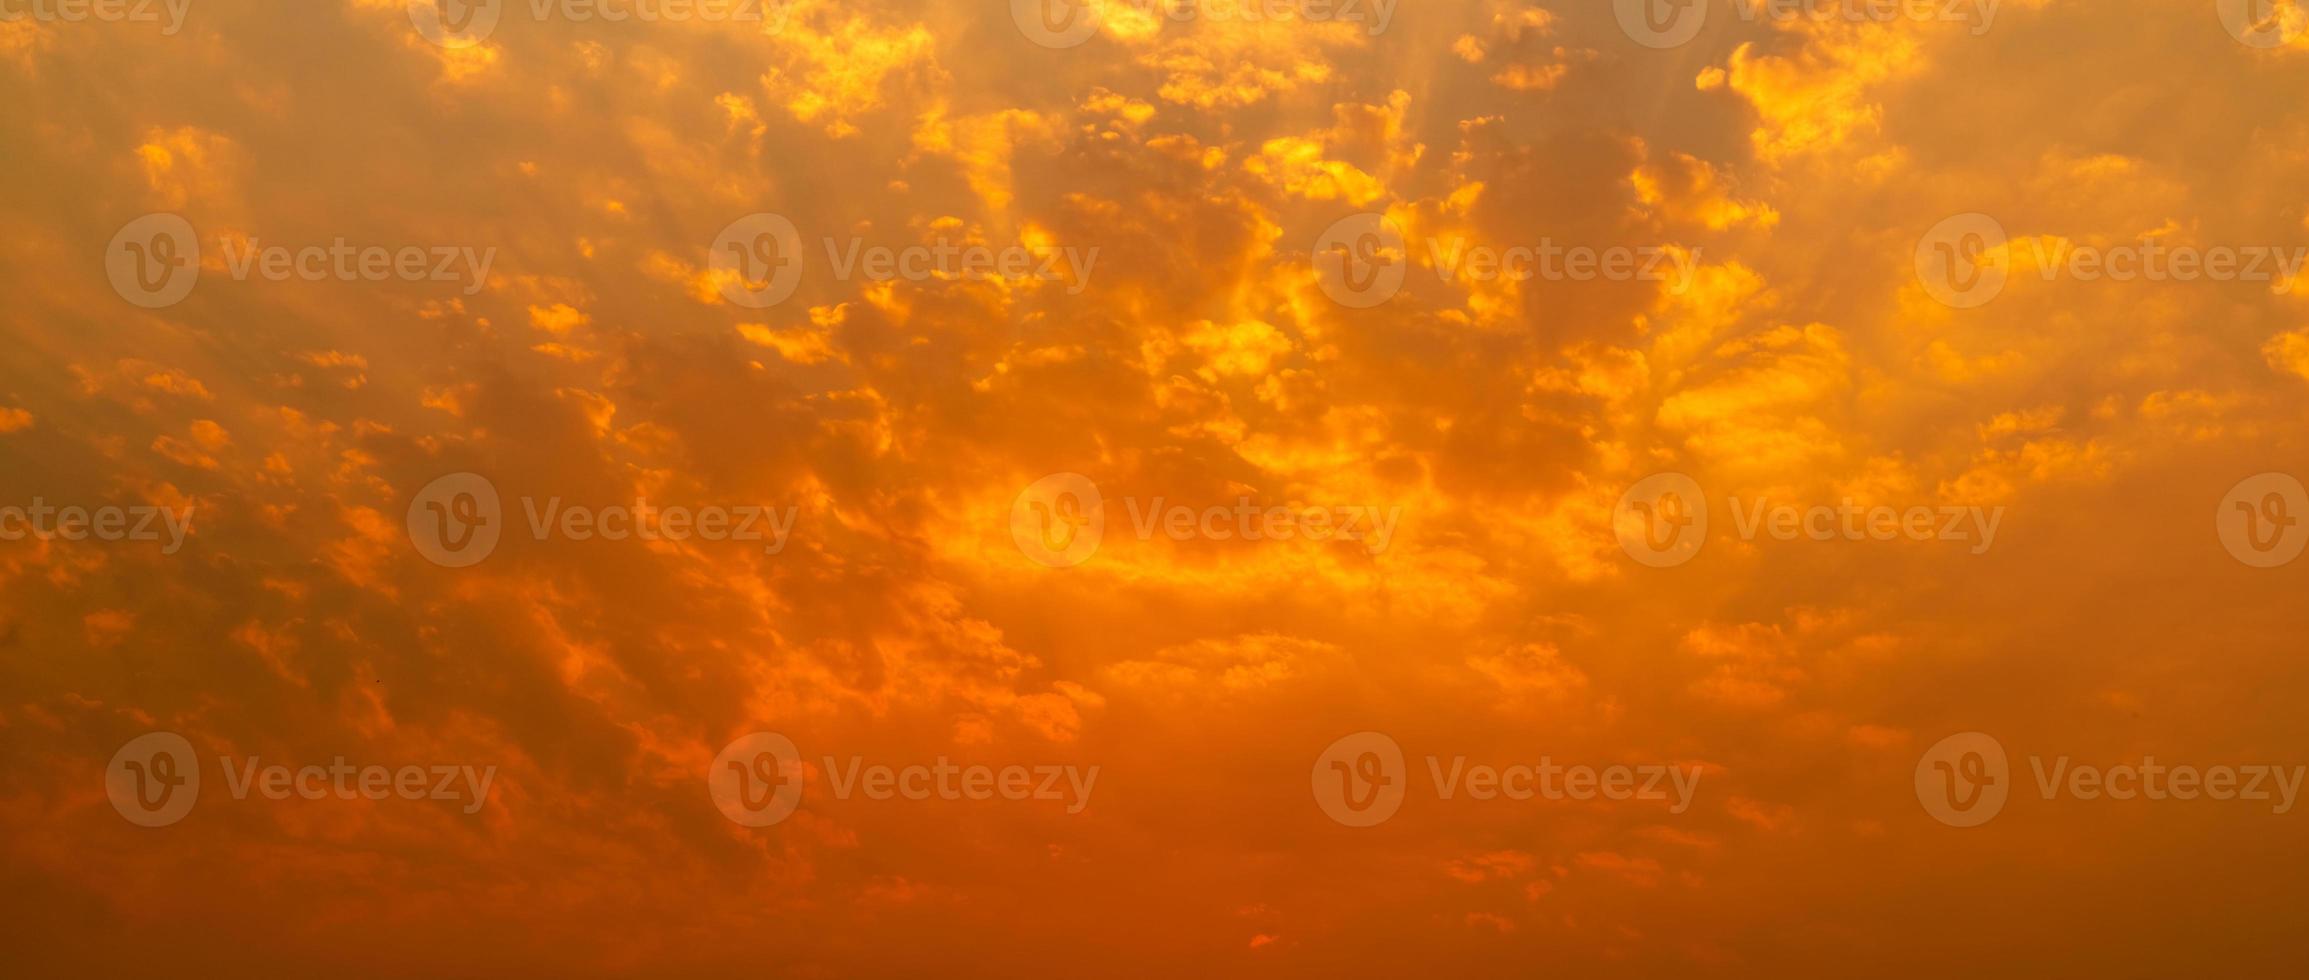 schöner sonnenuntergangshimmel. goldener sonnenunterganghimmel mit schönem wolkenmuster. orange, gelbe und rote Wolken am Abend. Freiheit und ruhiger Hintergrund. Schönheit in der Natur. kraftvolle und spirituelle Szene. foto